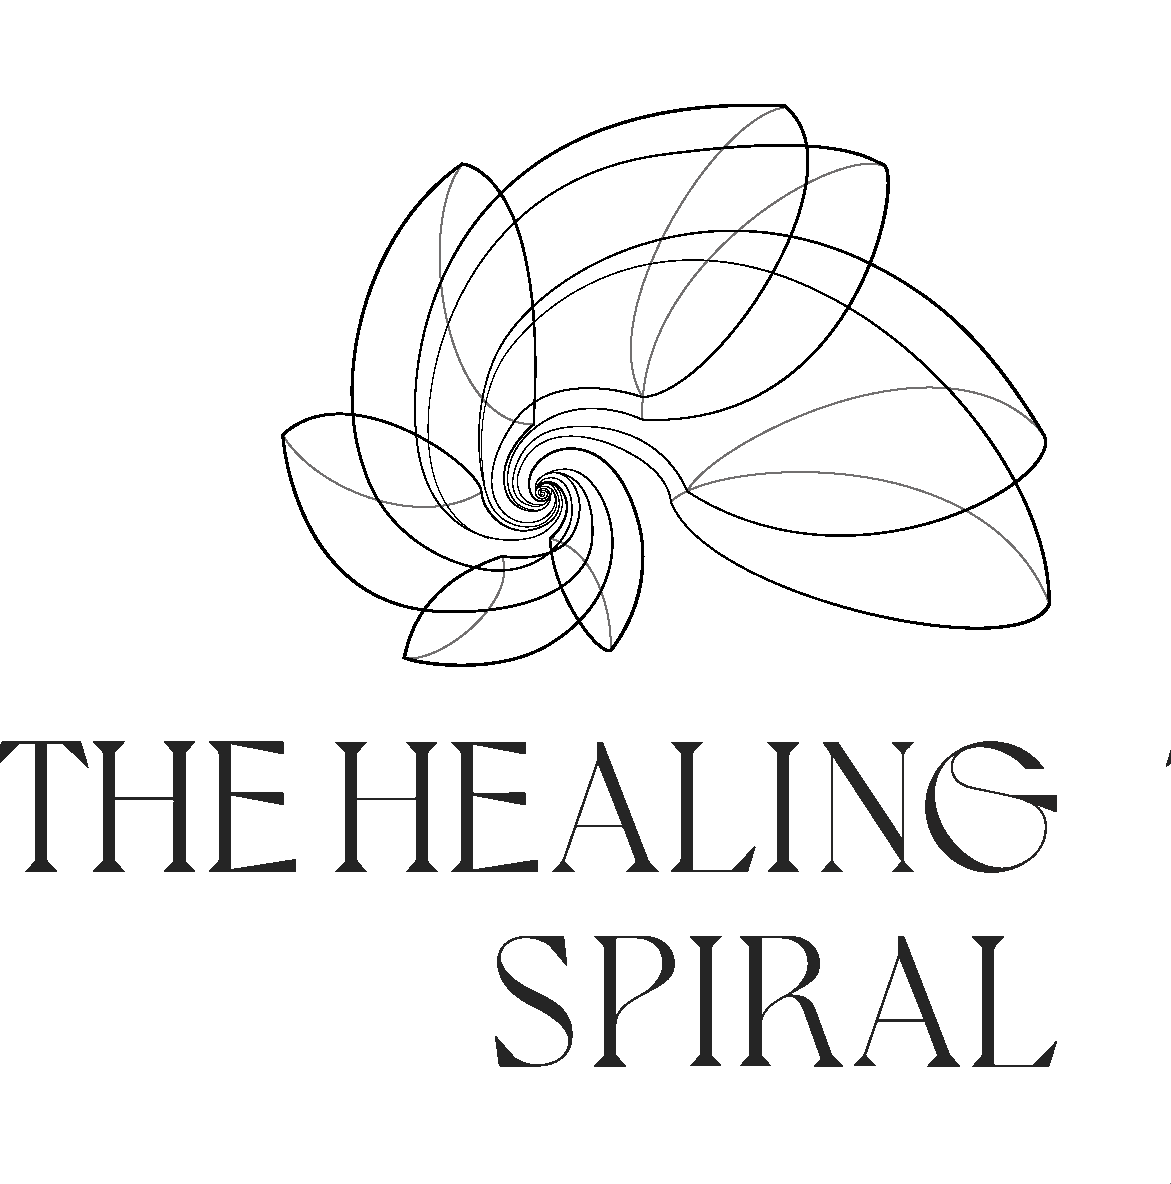 THE HEALING SPIRAL